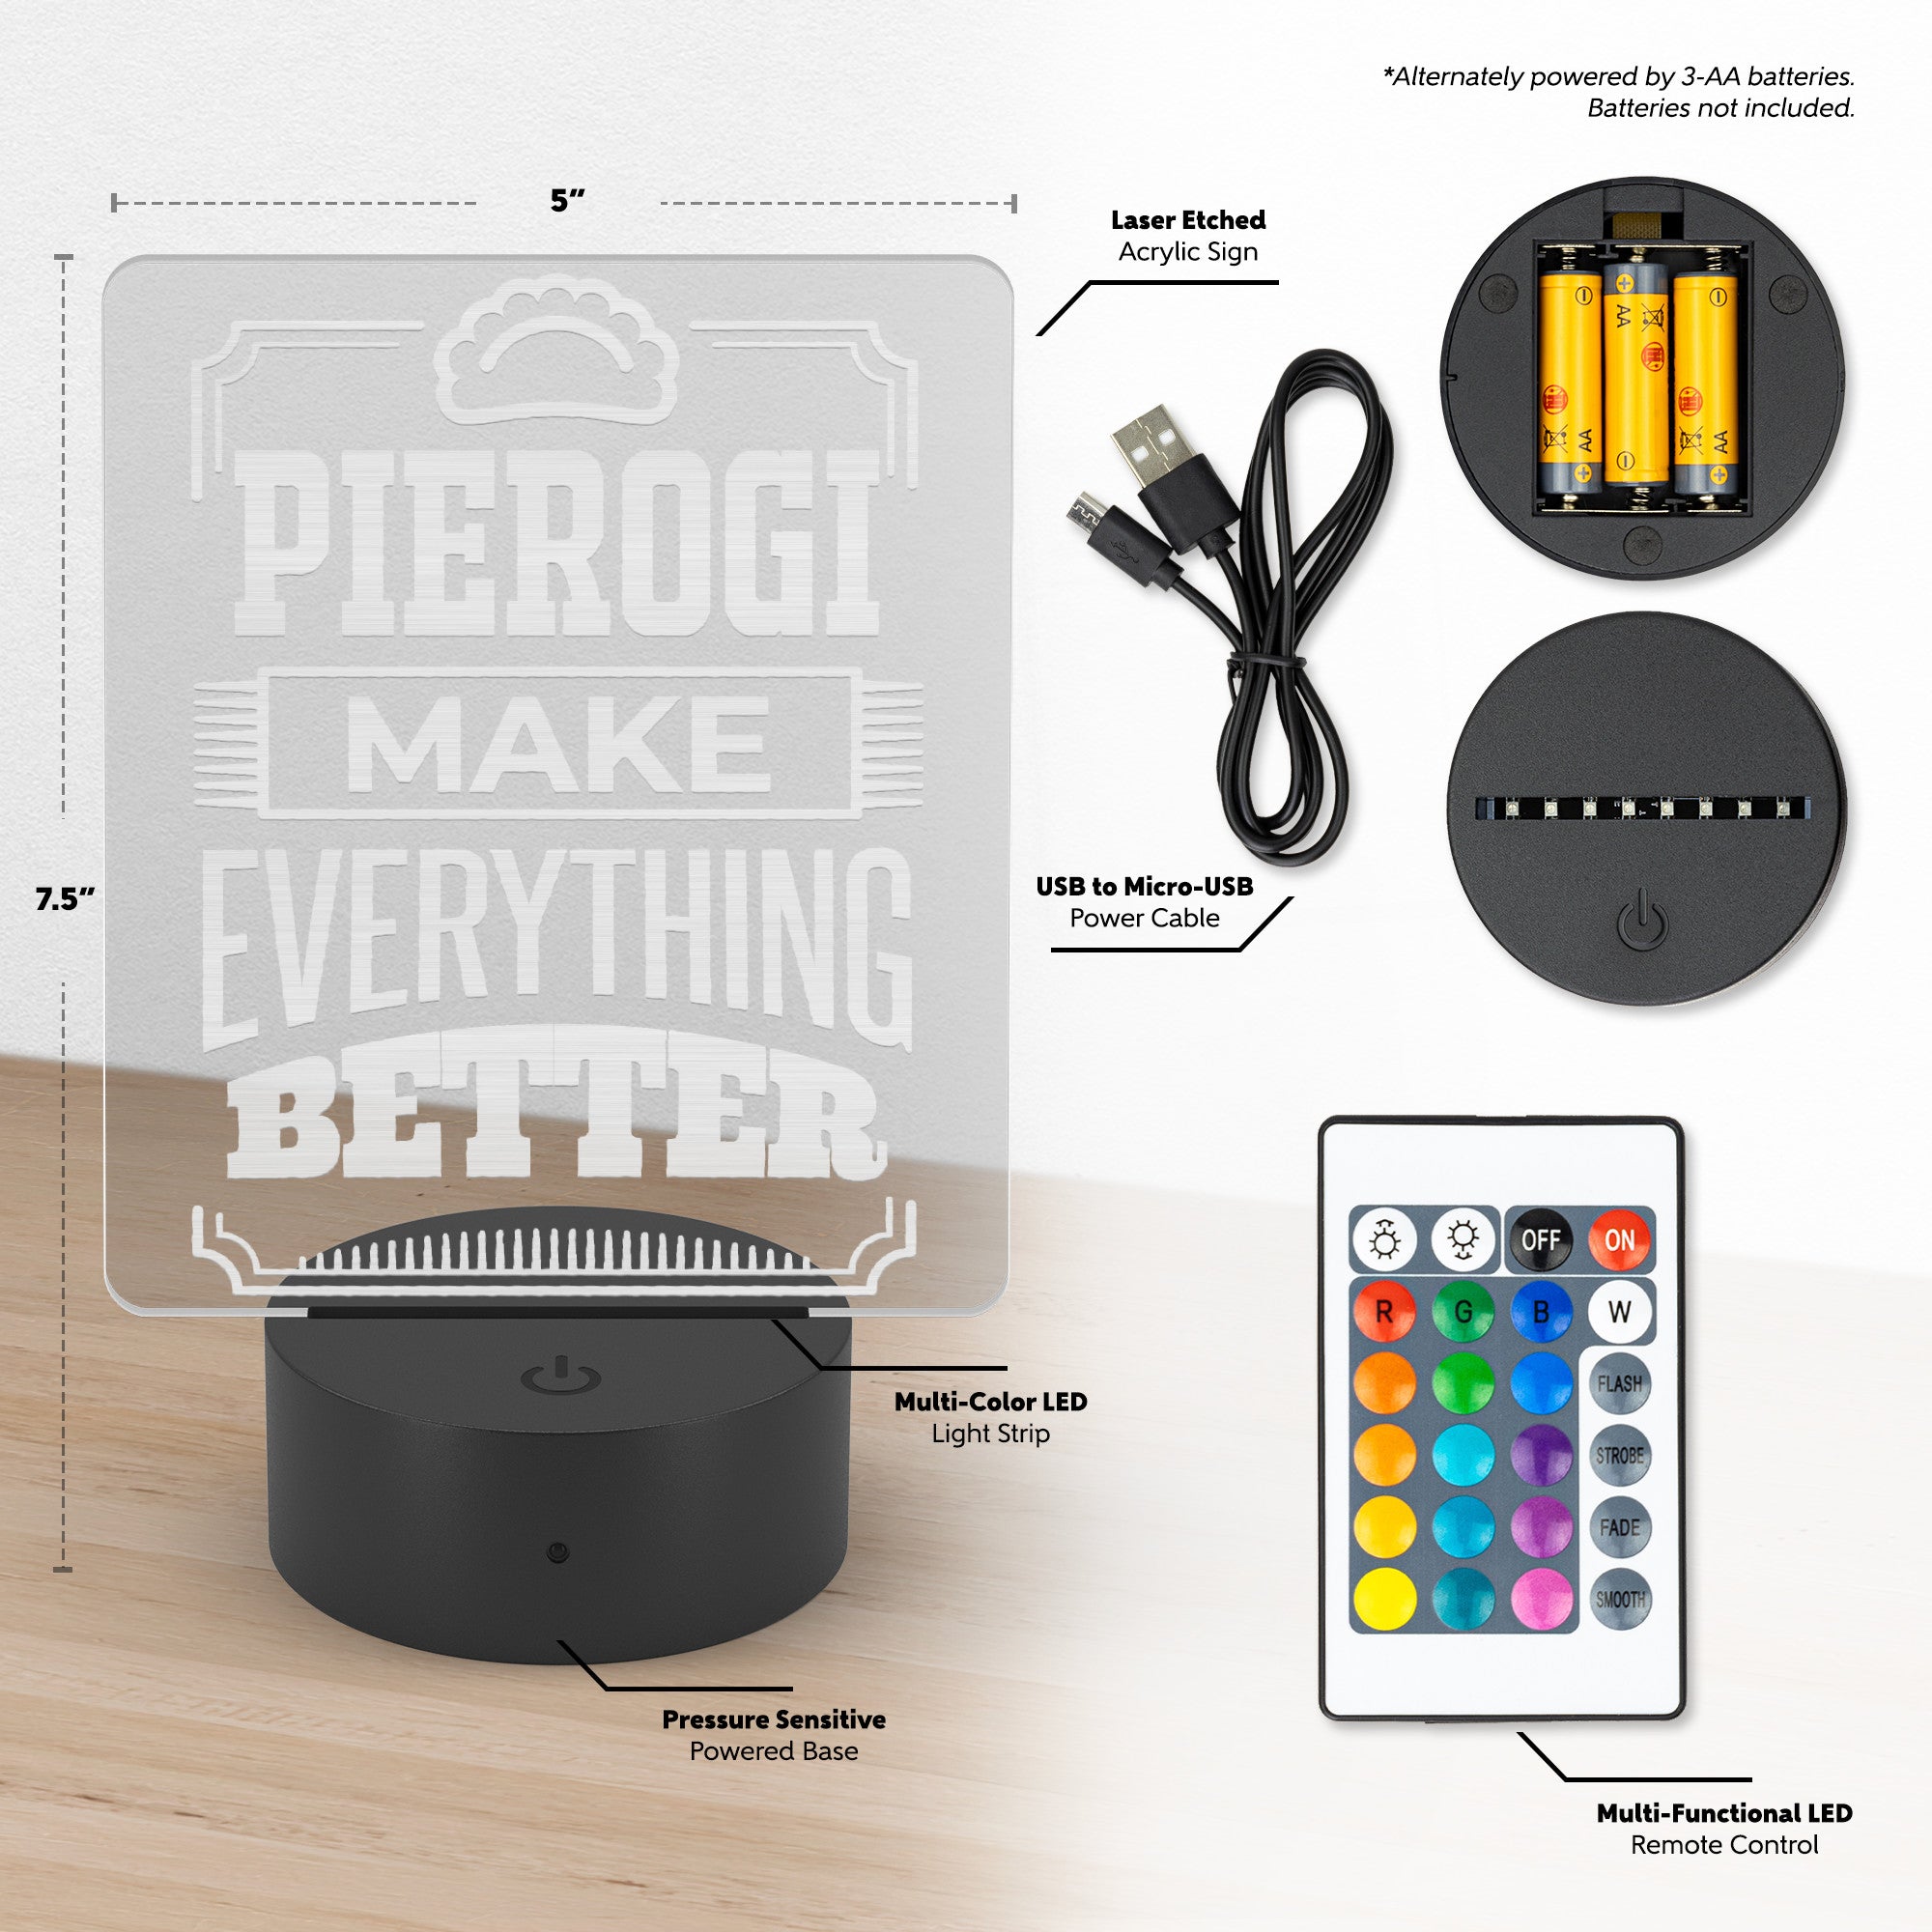 Pierogi Make Everything Better Rectangle Acrylic LED Sign LED Signs teelaunch   